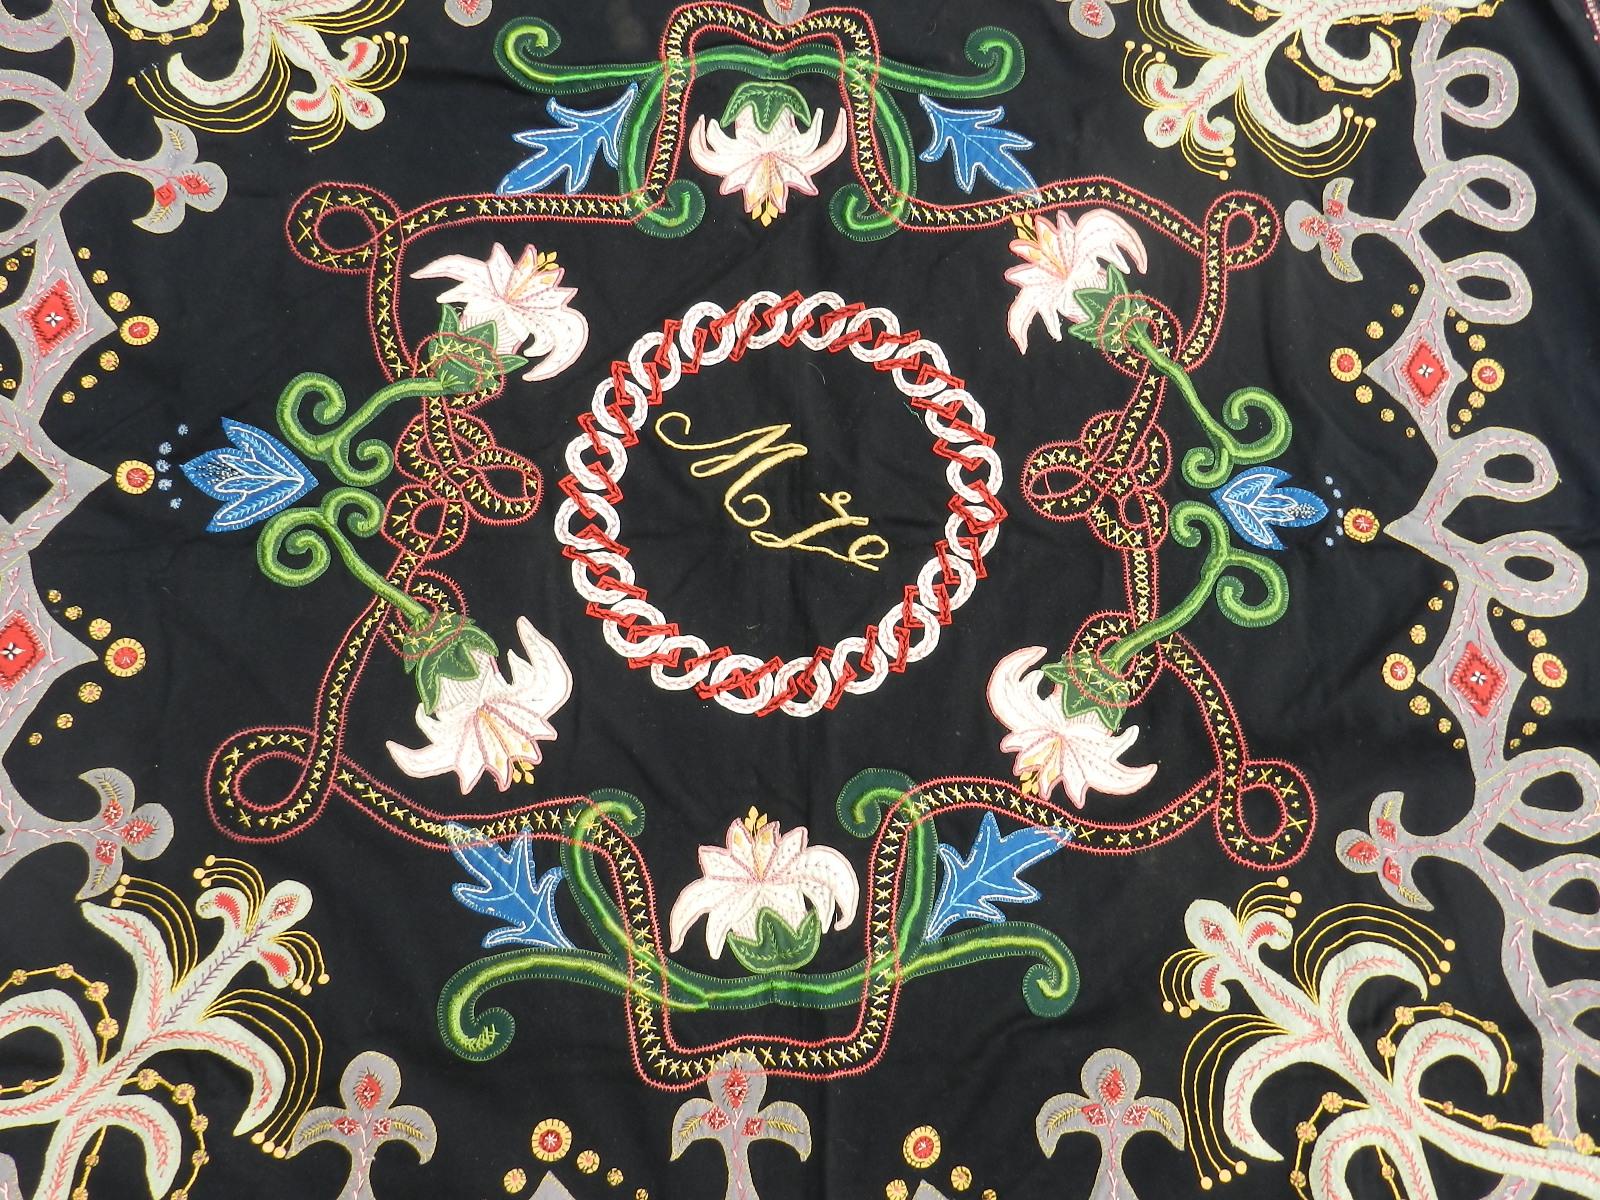 Handgestickte Decke oder Wandbehang Französisch Baskisch Spanisch ca. 1900-1910 Belle Époque Art Nouveau
Einzigartig
Außergewöhnliches und ungewöhnliches Design mit zentralen Initialen
Applizieren und mit verschiedenen